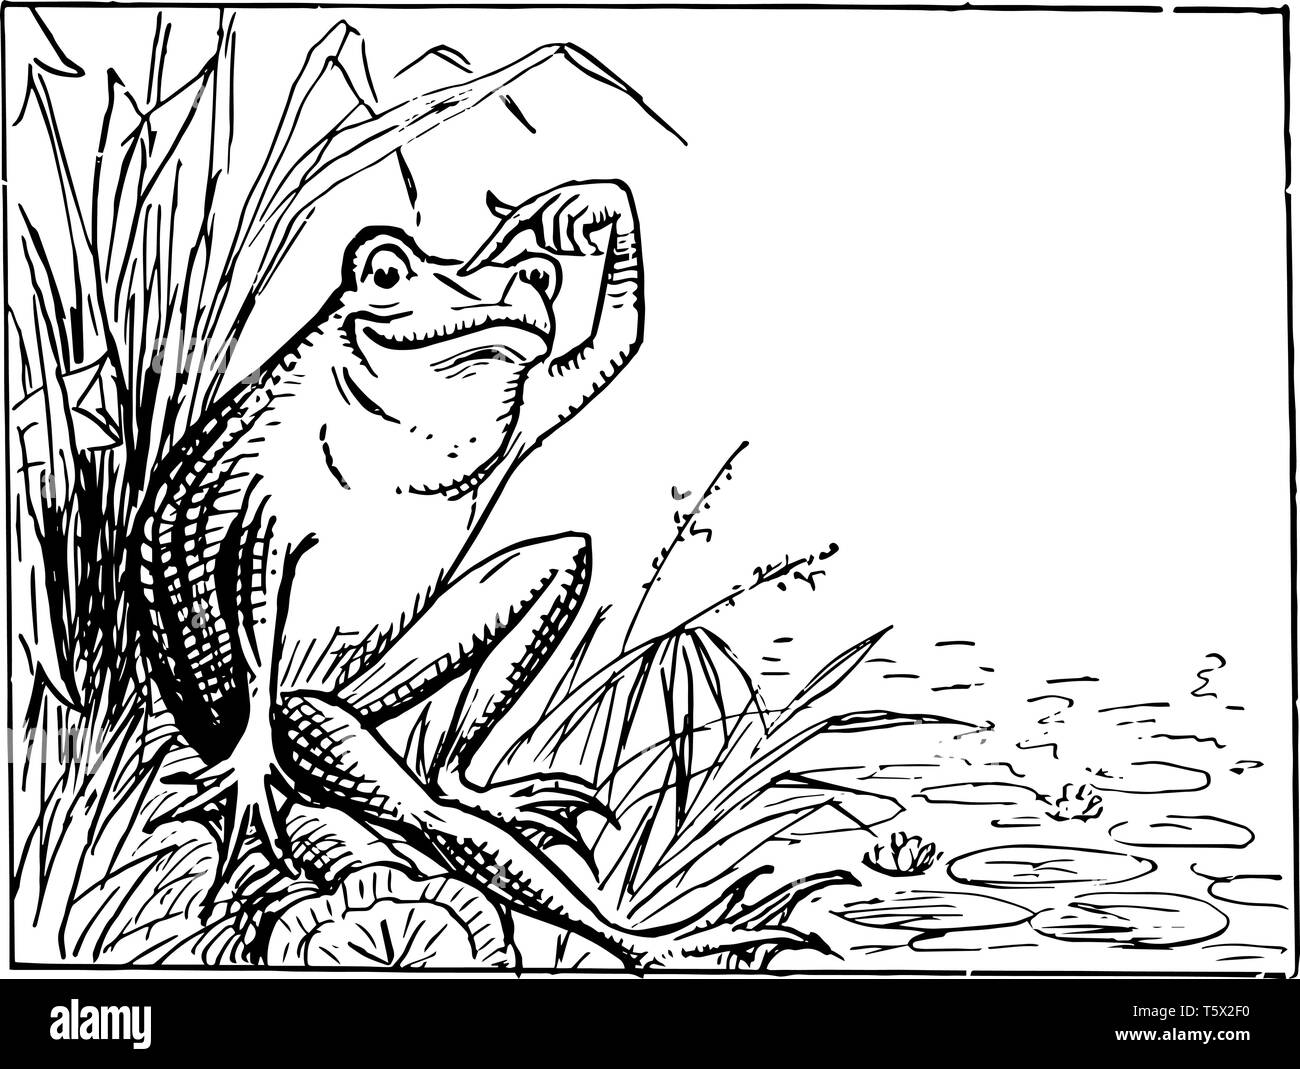 Frosch sitzend auf Bank und Kratzen Kopf dieser Szene zeigt einen Frosch sitzen auf der Bank von einem Teich und kratzte seinen Kopf vintage Strichzeichnung oder engravi Stock Vektor